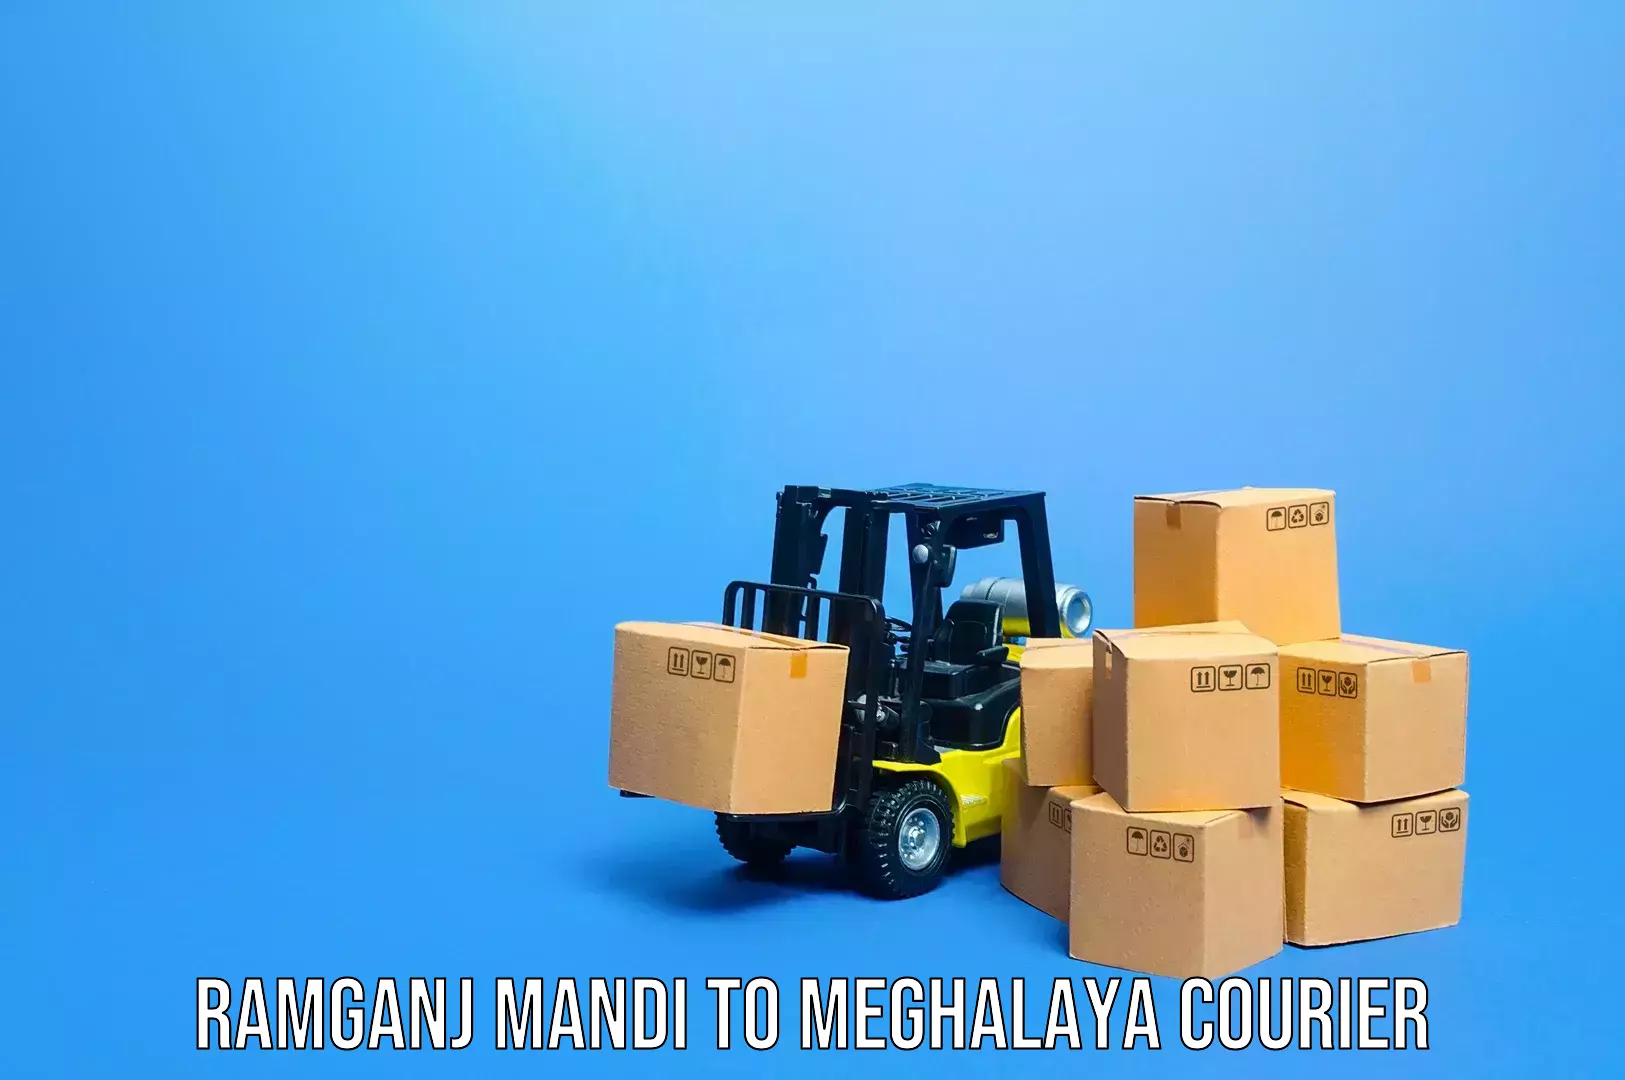 Baggage transport technology in Ramganj Mandi to Meghalaya